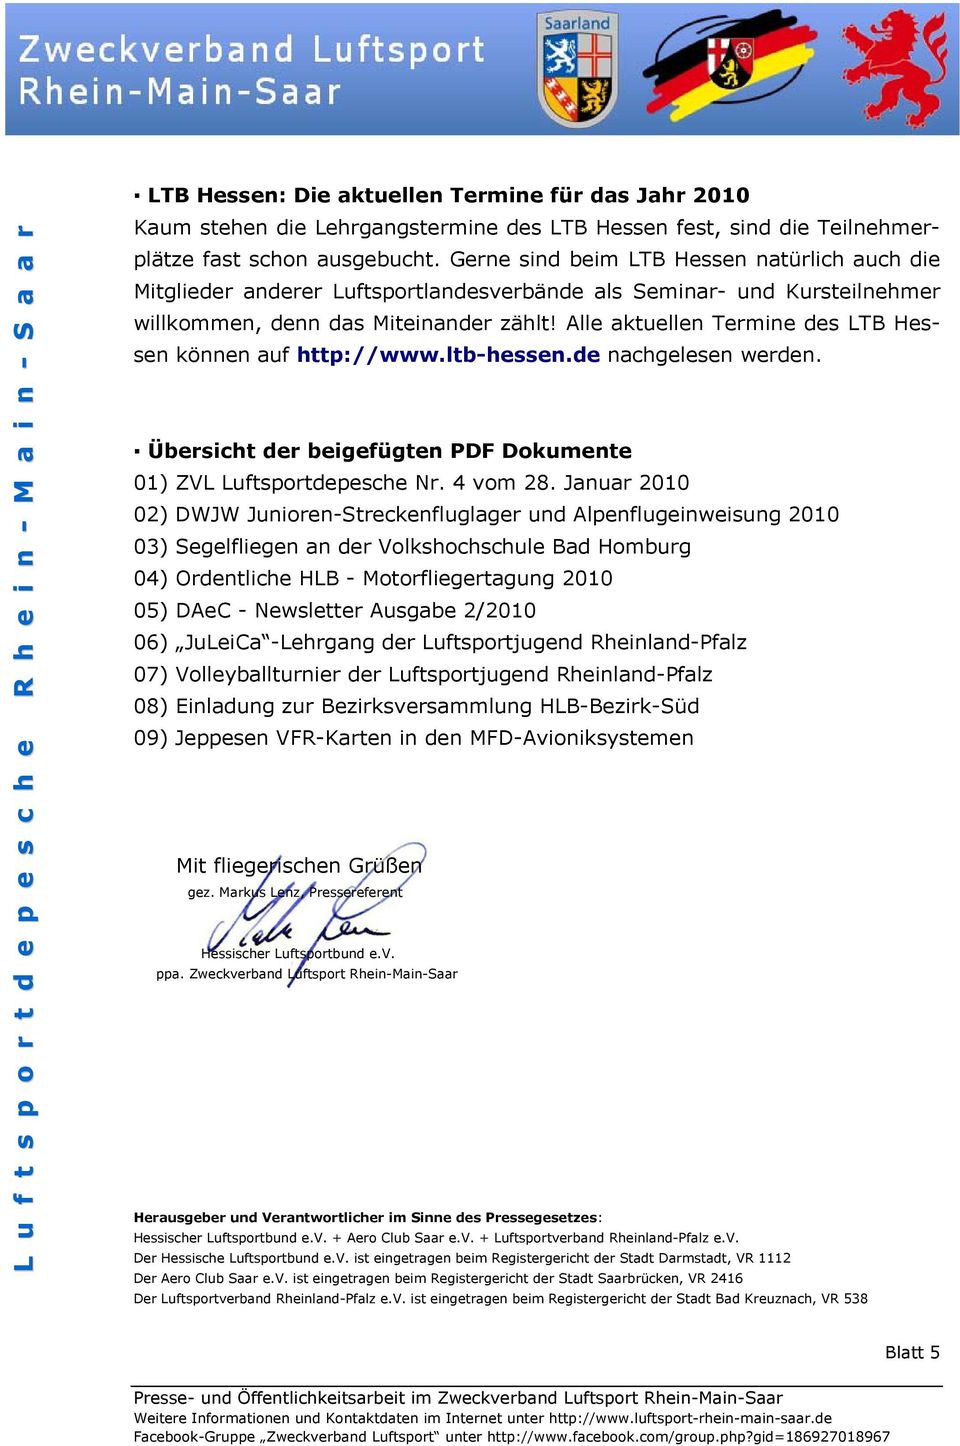 Alle aktuellen Termine des LTB Hessen können auf http://www.ltb-hessen.de nachgelesen werden. Übersicht der beigefügten PDF Dokumente 01) ZVL Luftsportdepesche Nr. 4 vom 28.